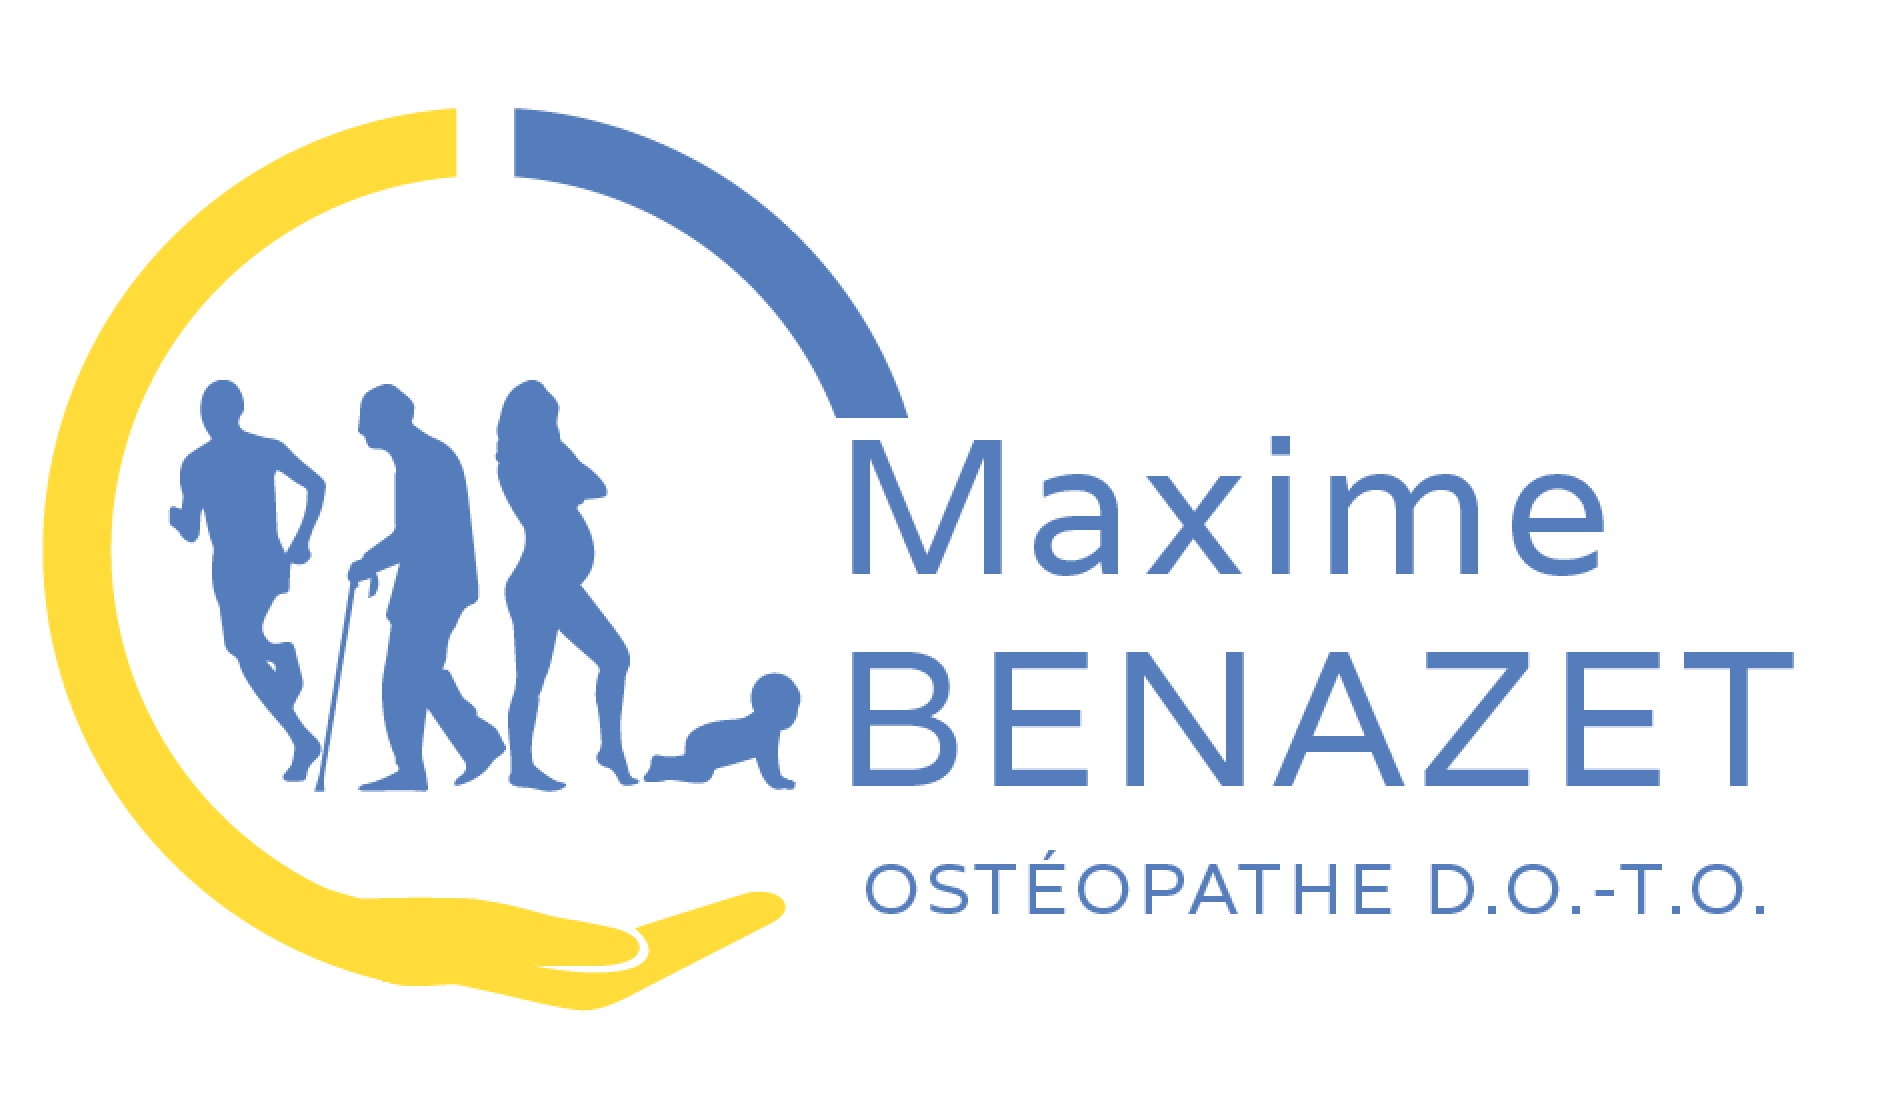 Osteopathe osteopathie lherm benazet maxime logo benazet